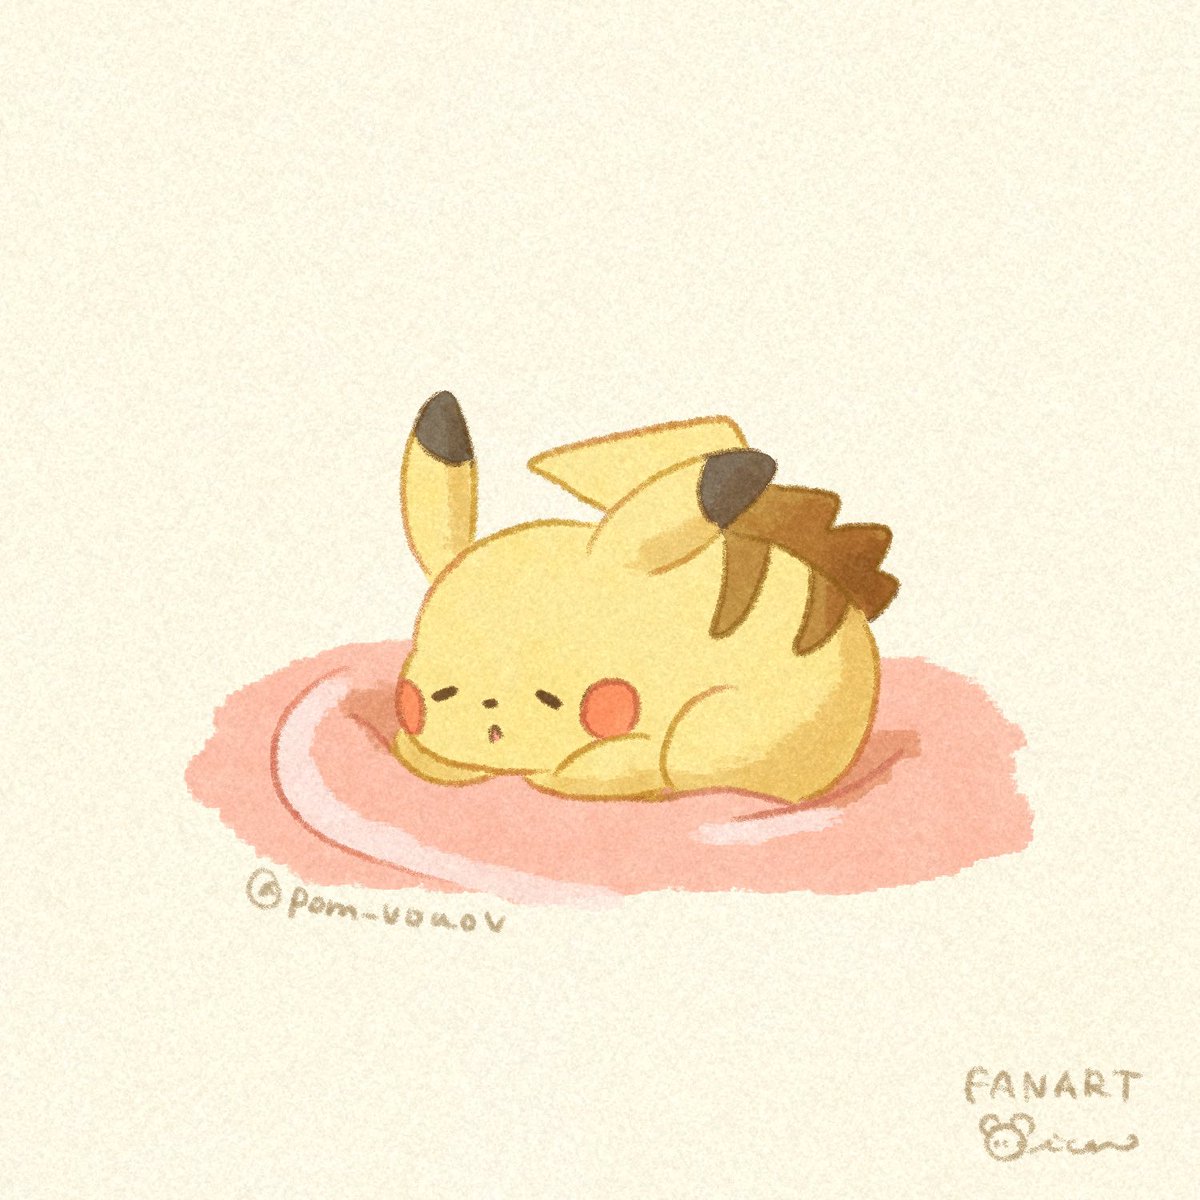 ポケモン「Sleeping Pikachu o'ᆺ'o#pokemon #ポケモン 」|Mion🌱デザフェスB-318のイラスト